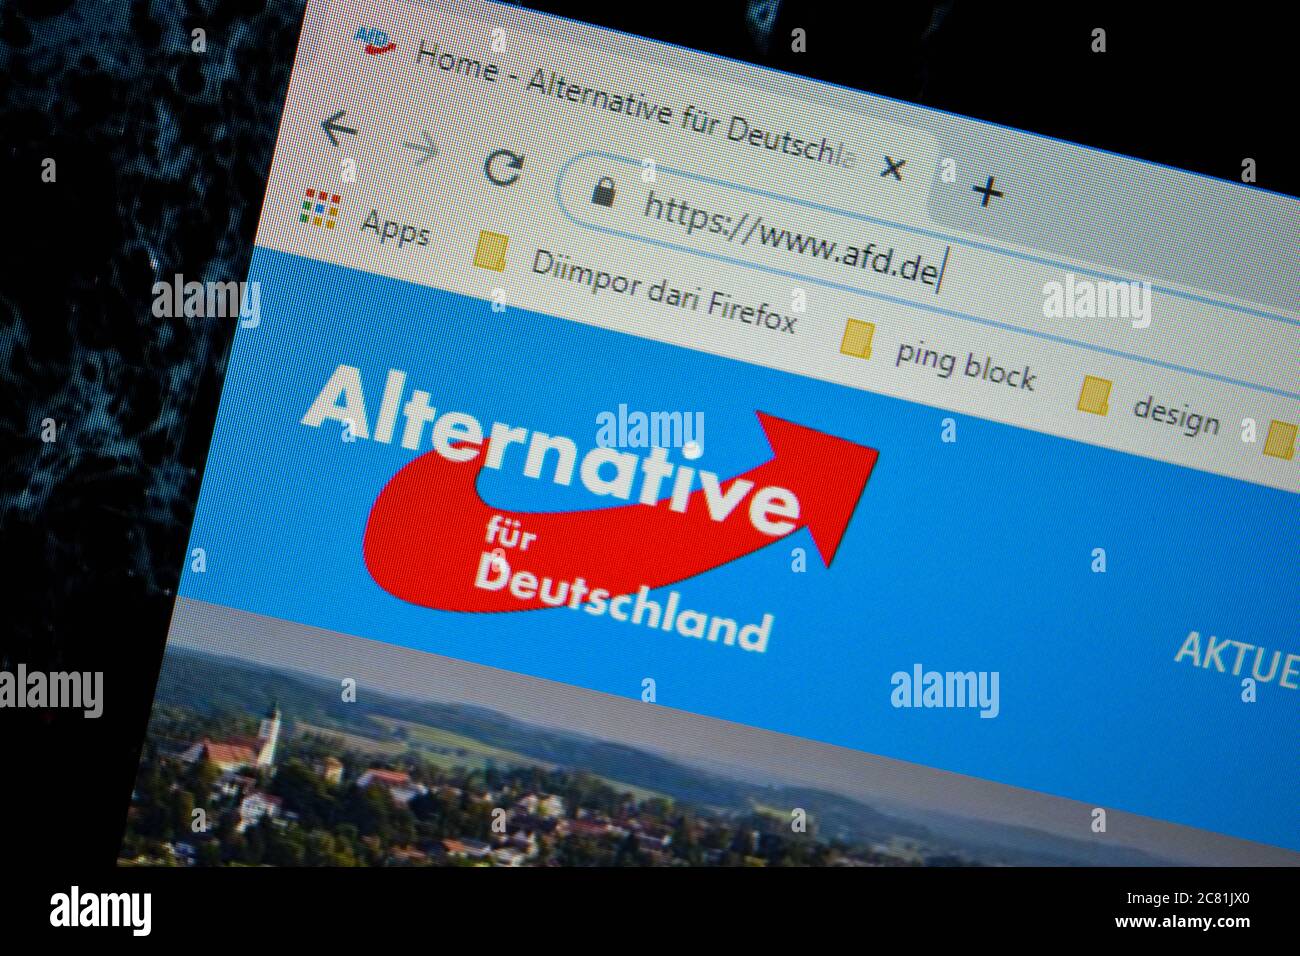 Alternative fur Deutschland - pagina iniziale del sito web AFD sullo schermo del computer. Bekasi, luglio 21 2020 Foto Stock